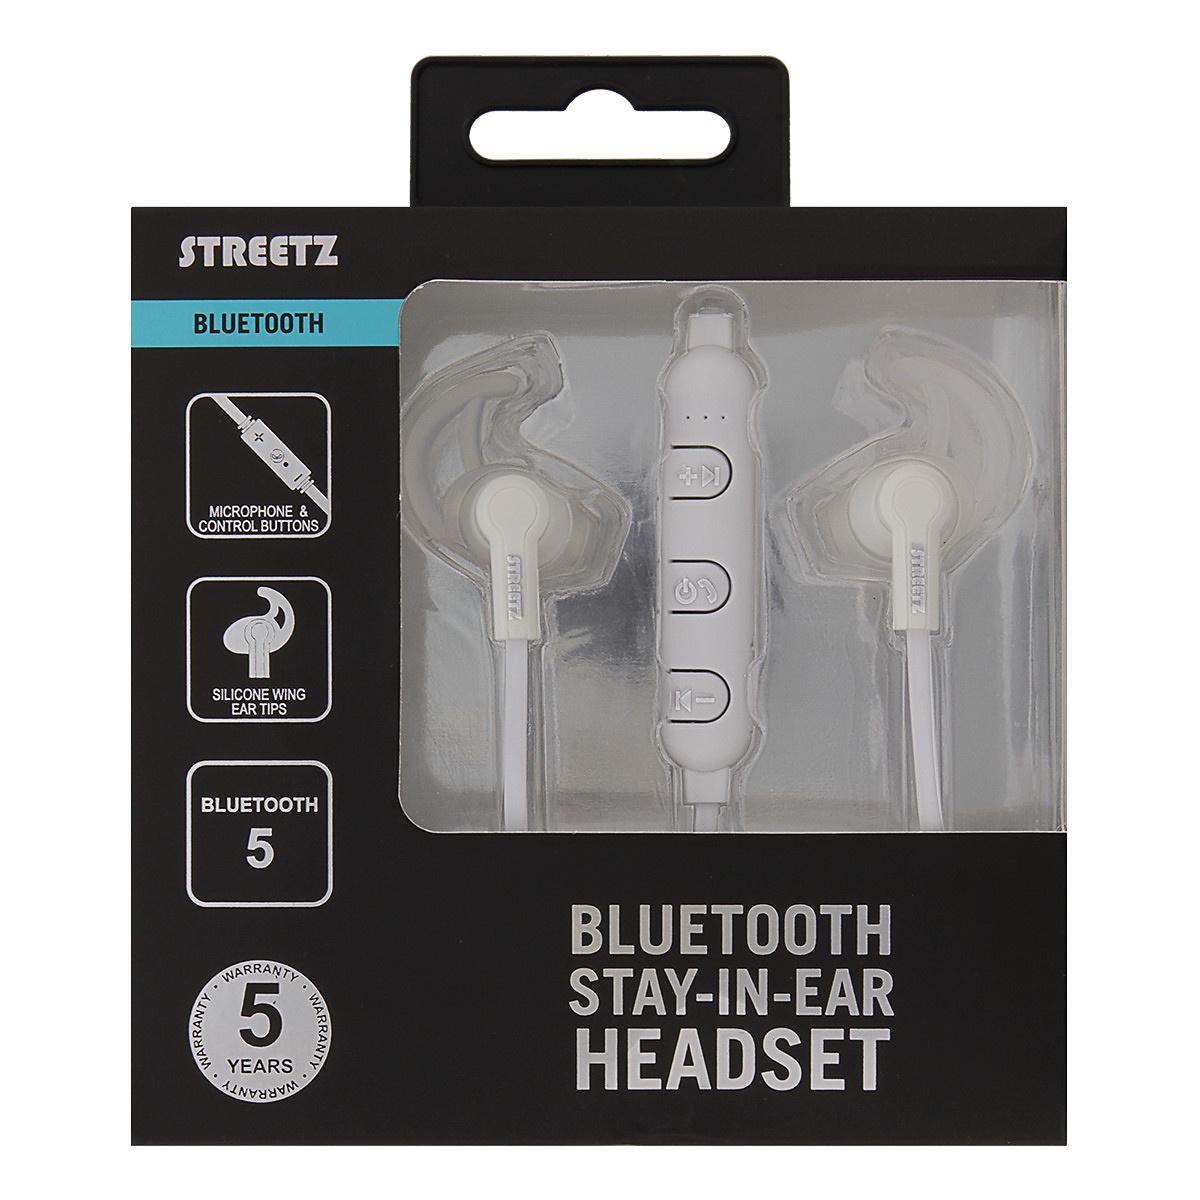 STREETZ Bluetooth Stay-in-ear Headset, Bluetooth 5, vit